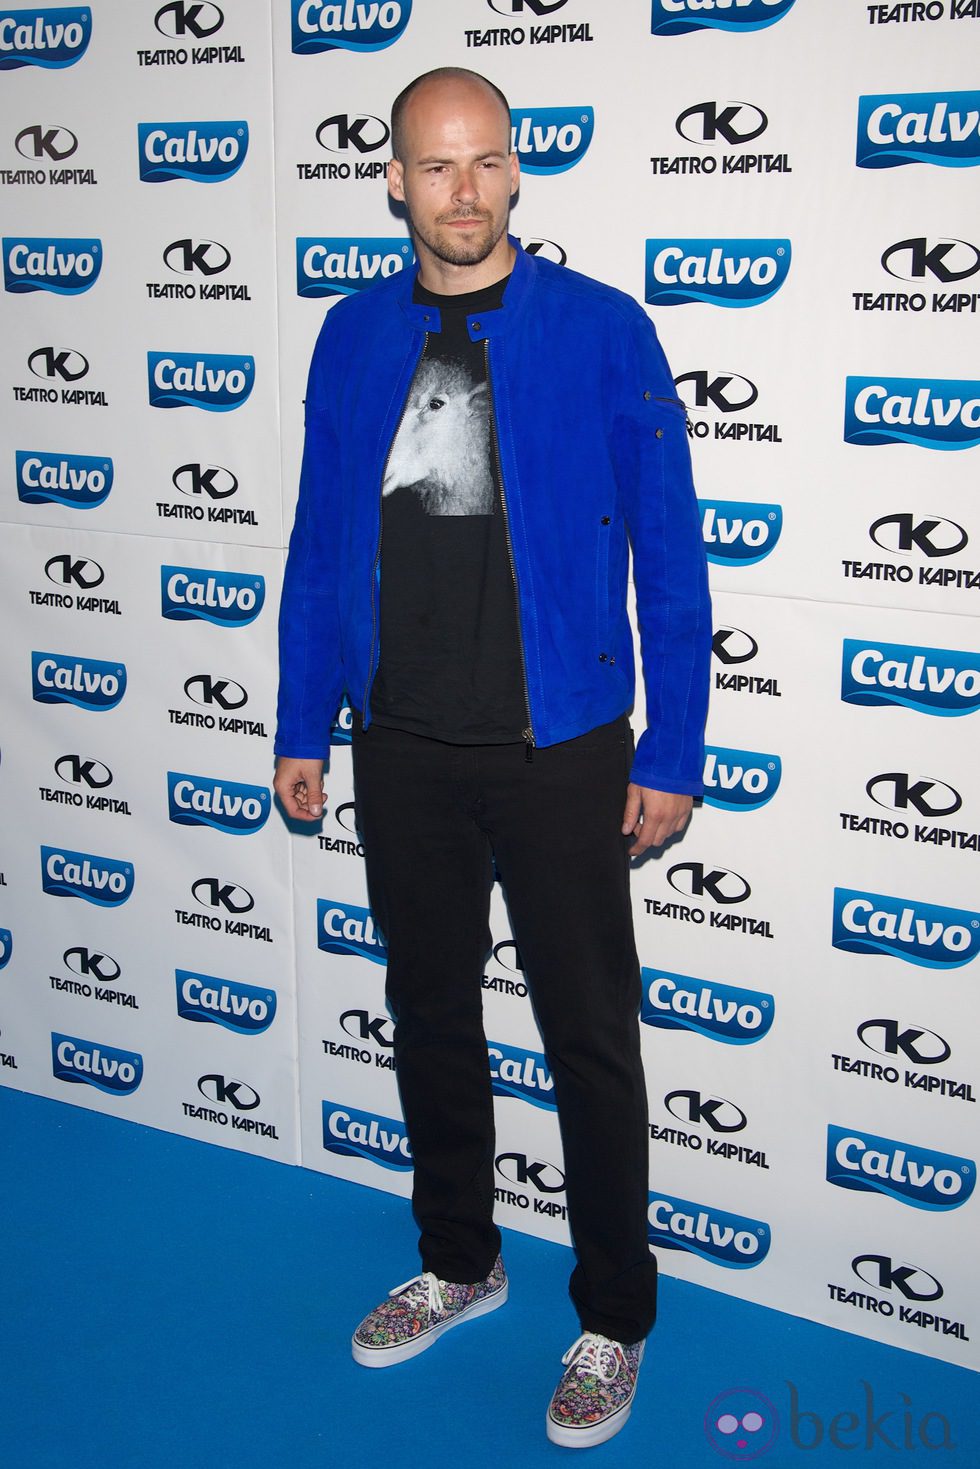 Olfo Bosé en la presentación del Team Calvo 2014 en Madrid